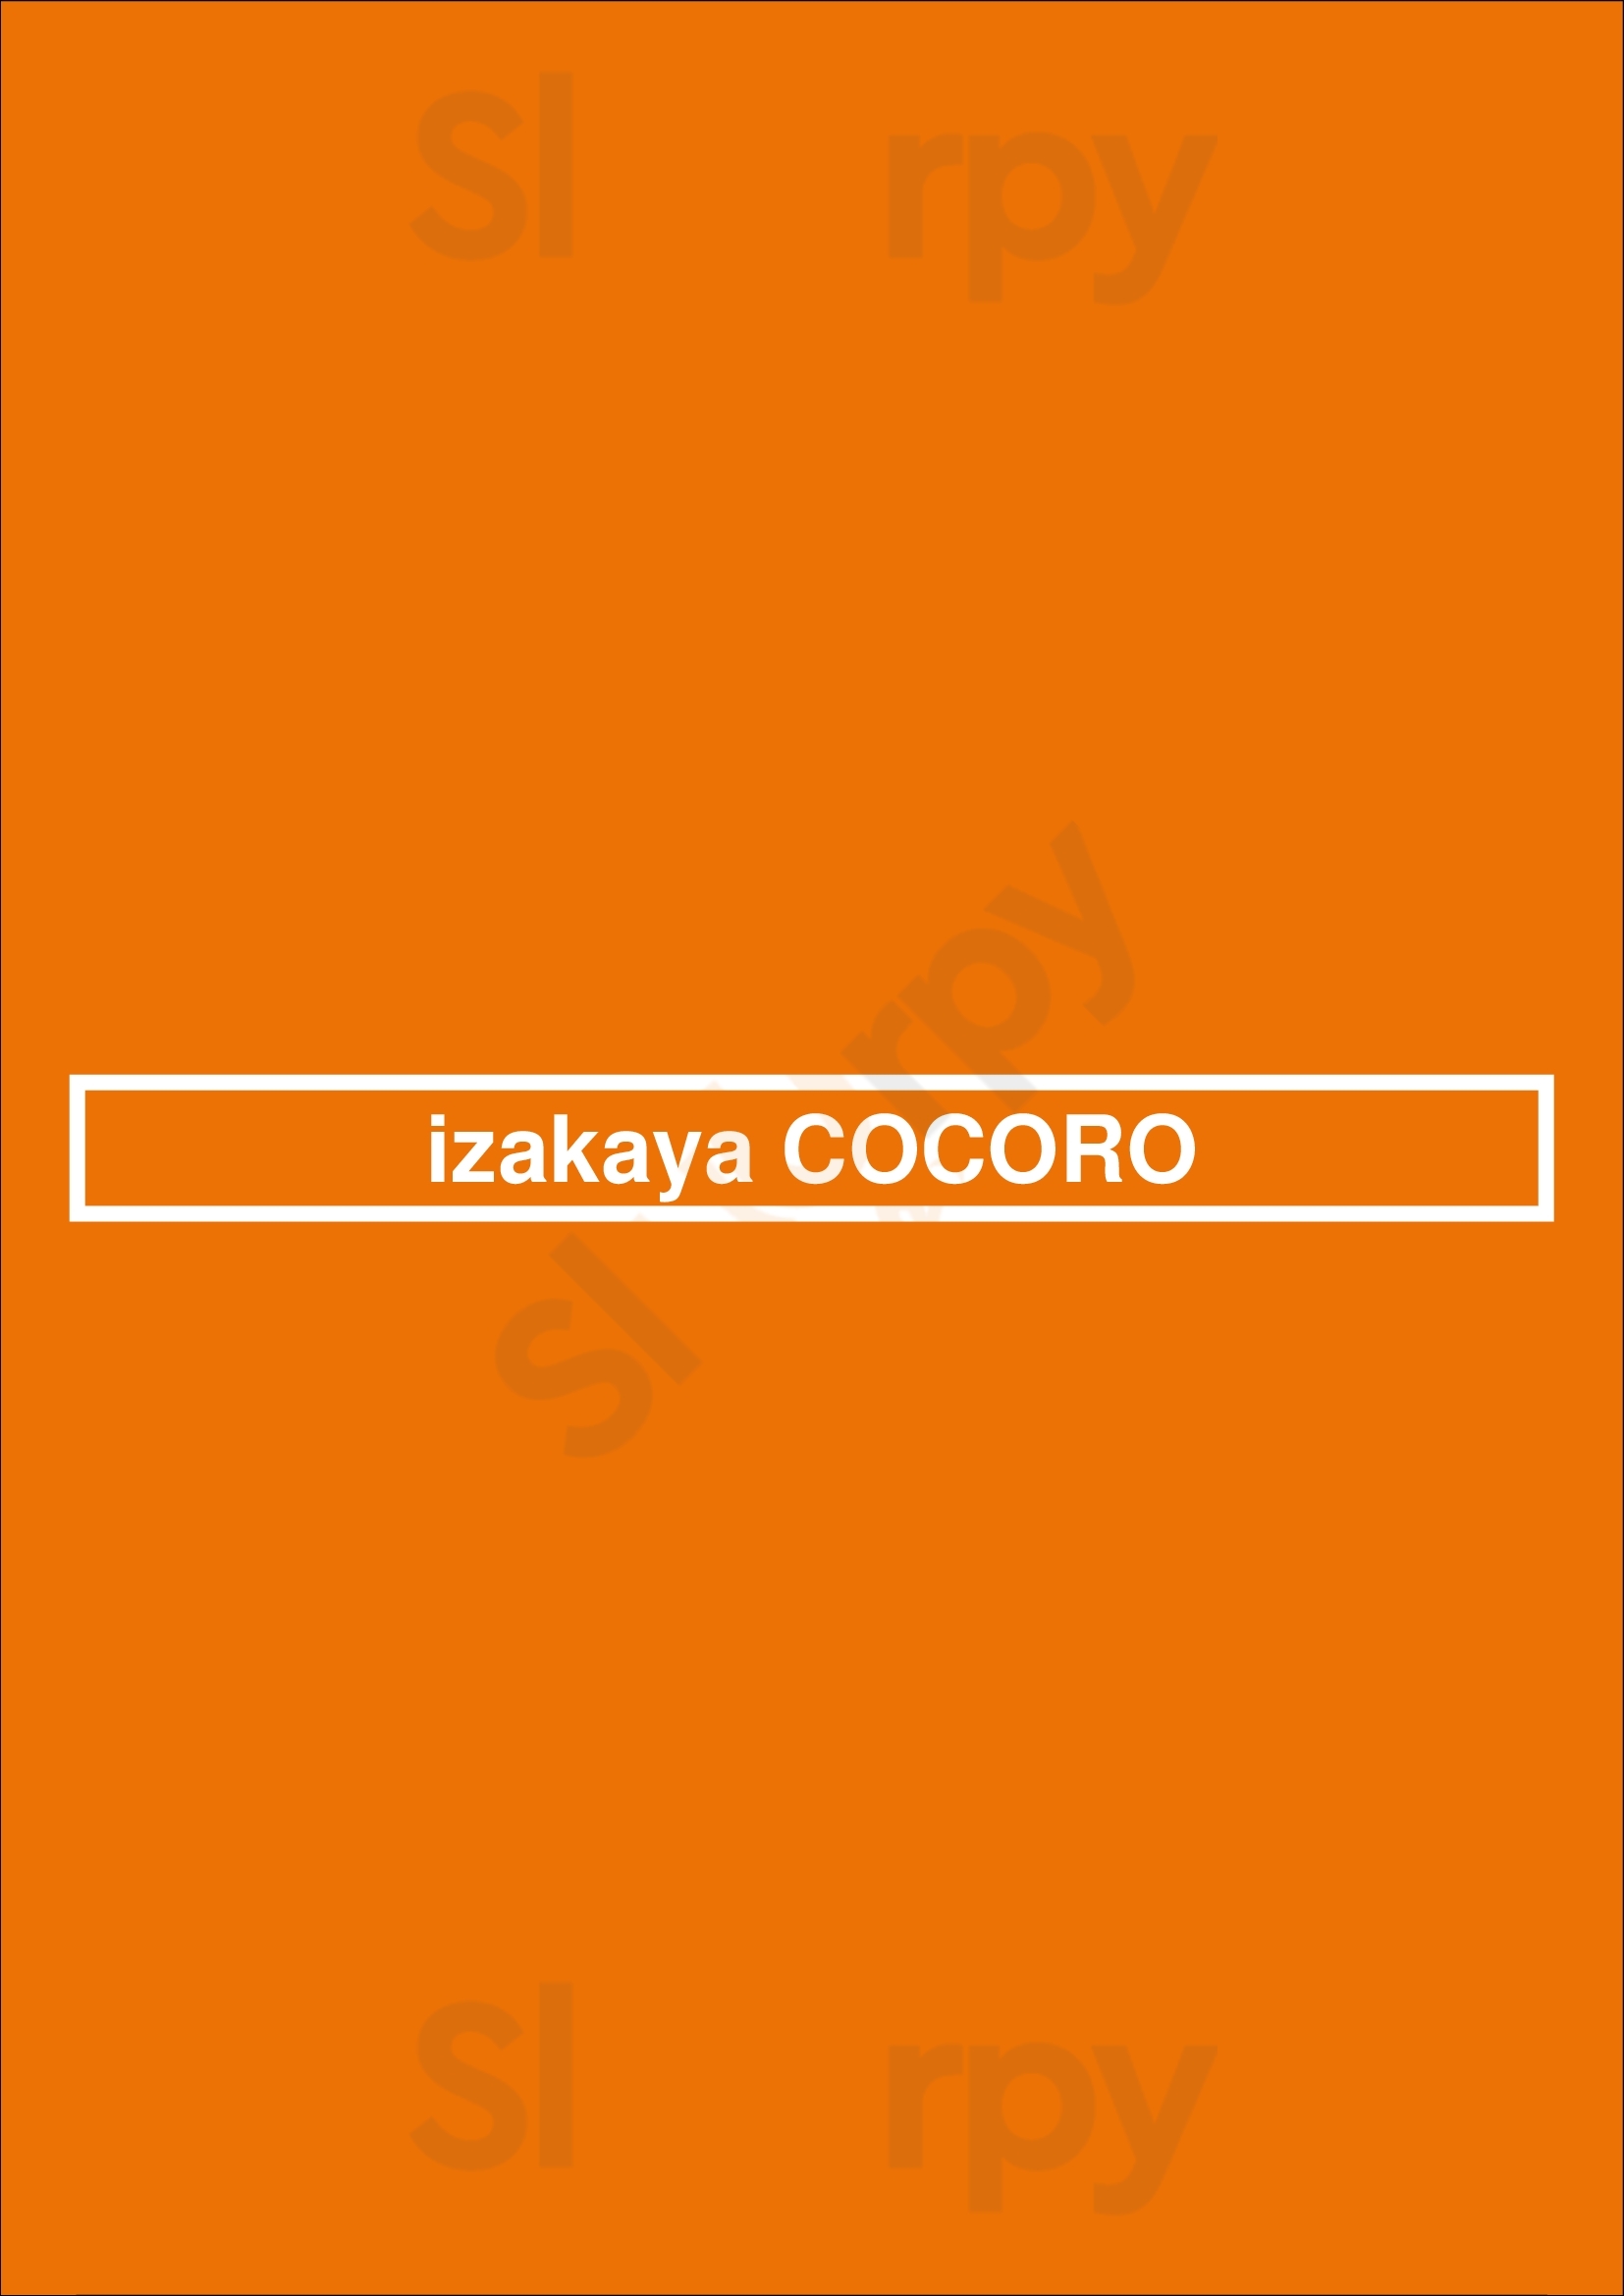 Izakaya Cocoro São Paulo Menu - 1